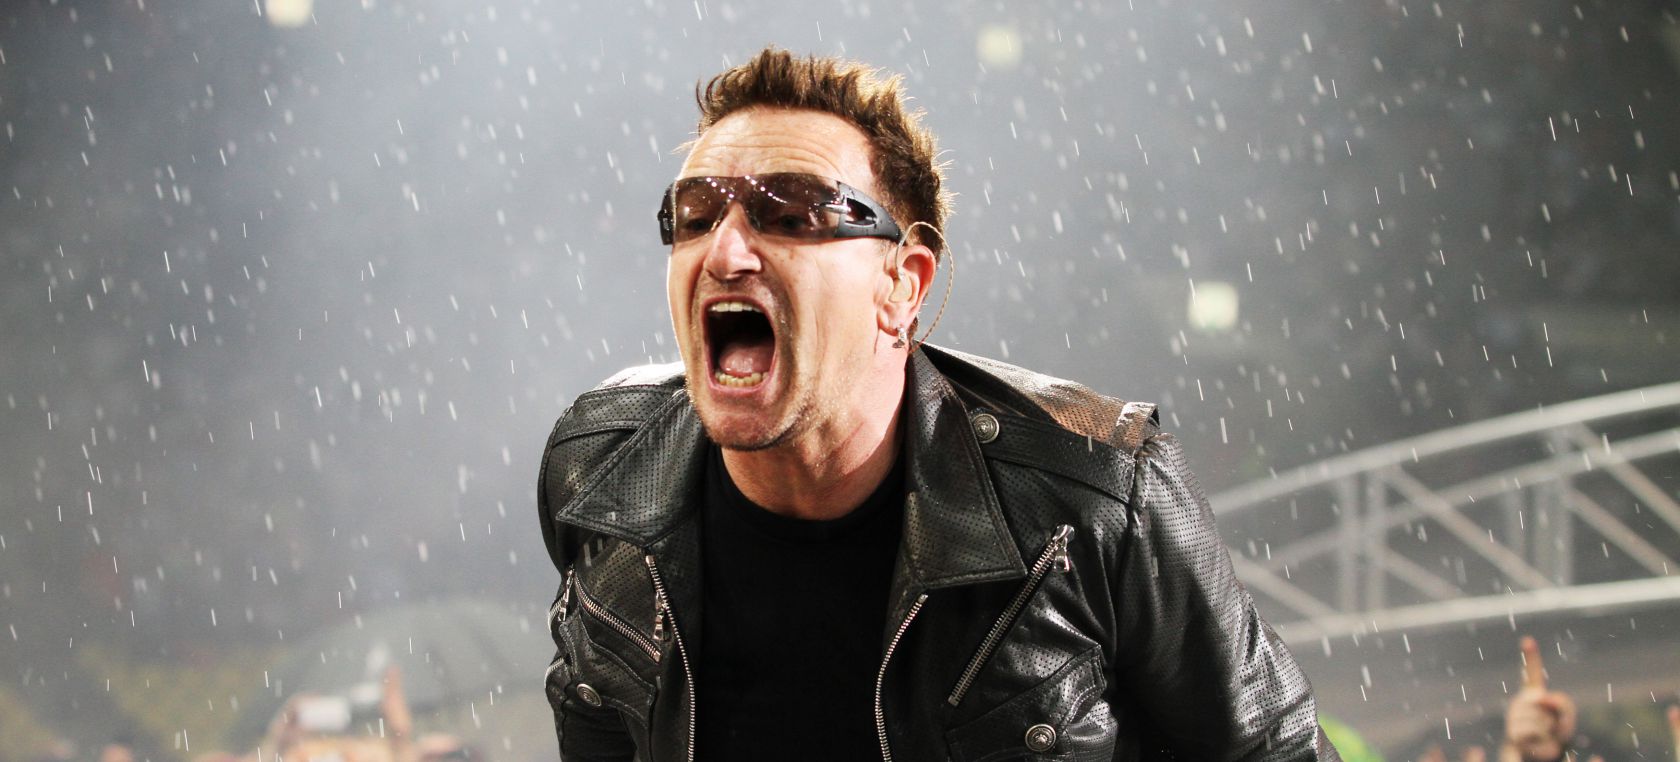 Bono (U2) celebra 62 años y una vida fascinante junto a la élite del rock